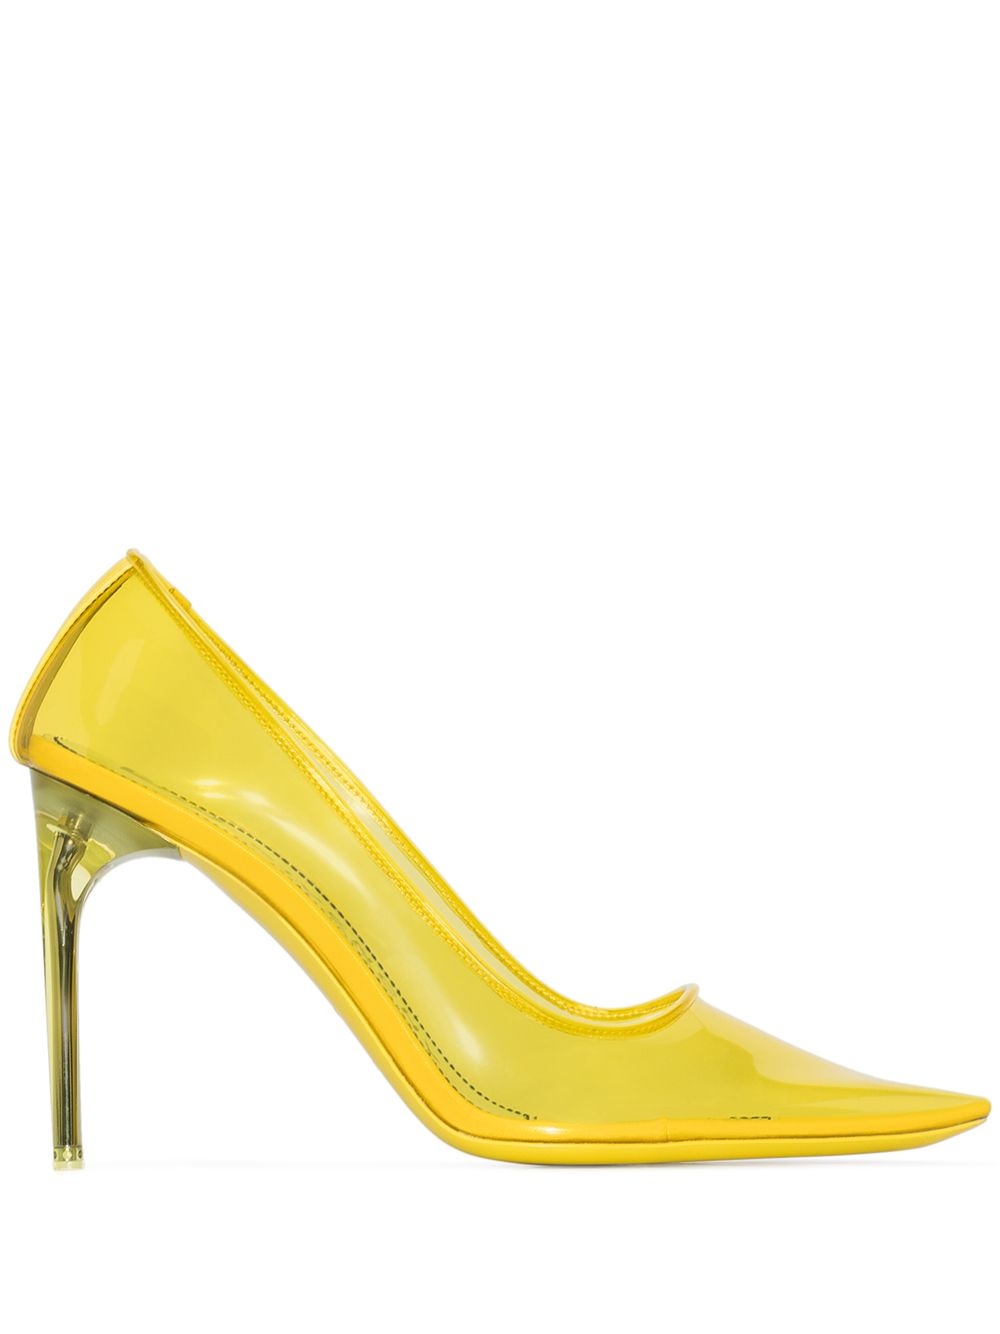 фото Givenchy прозрачные туфли-лодочки на шпильке